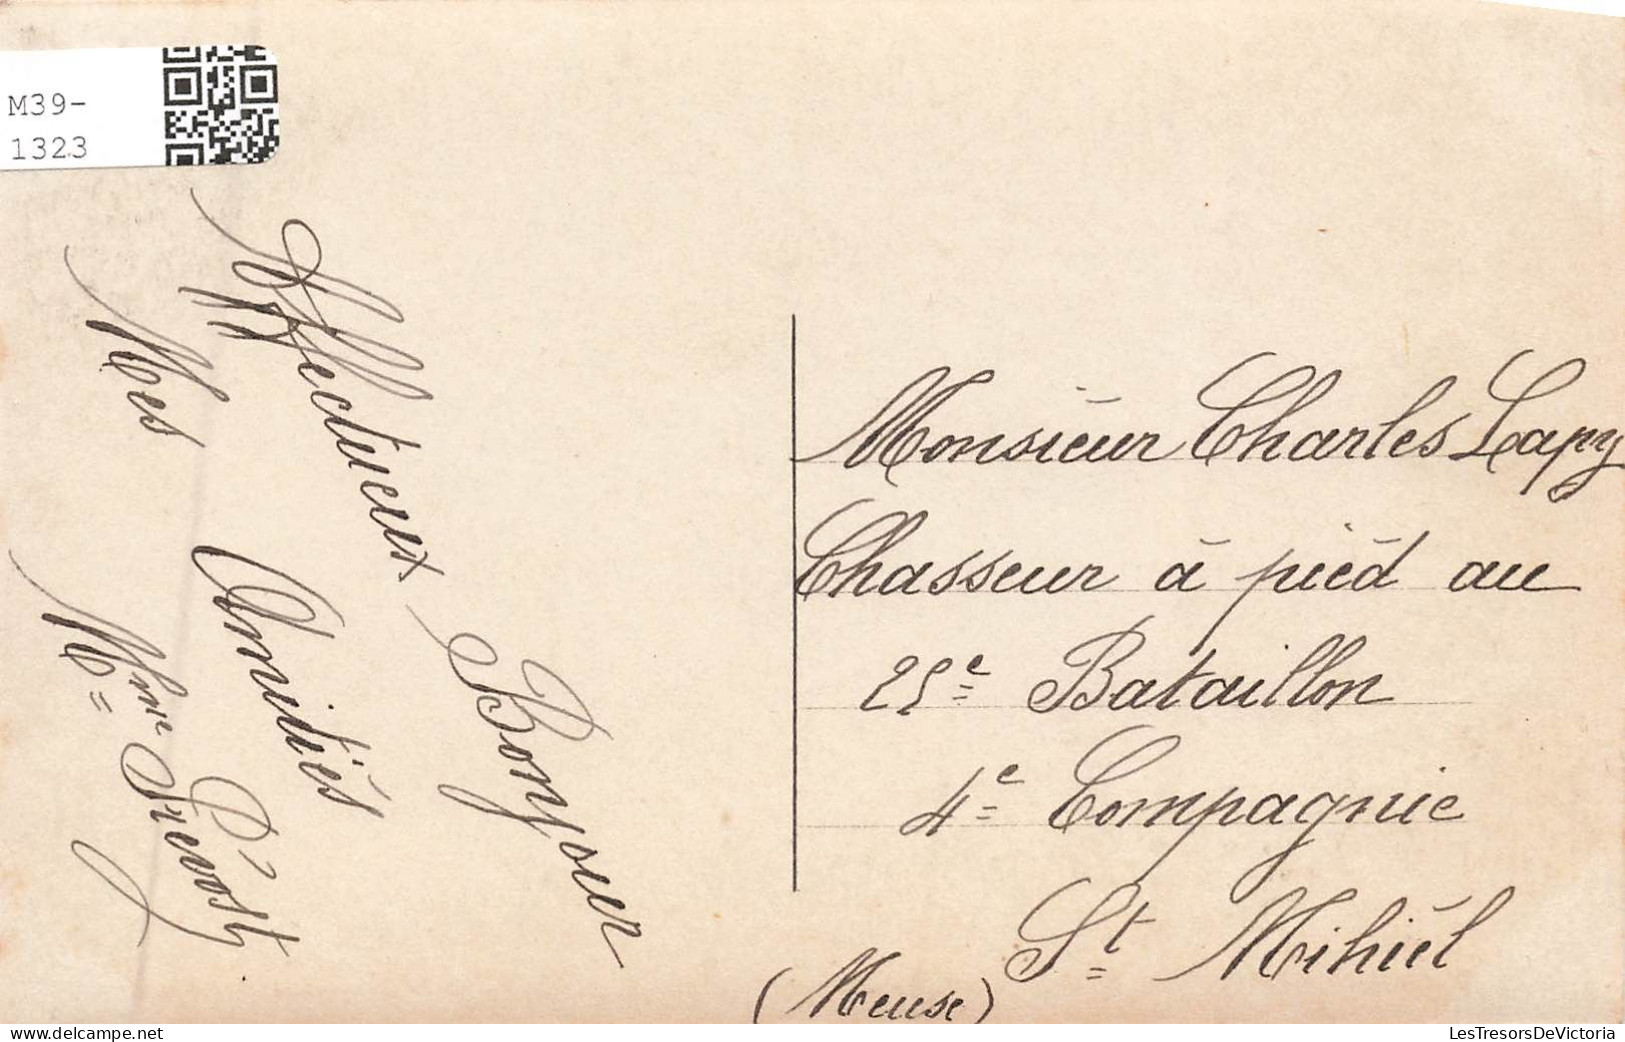 FÊTES - VŒUX - 1er Avril 1911 - Femme Portant Un Poisson - Carte Postale Ancienne - Erster April